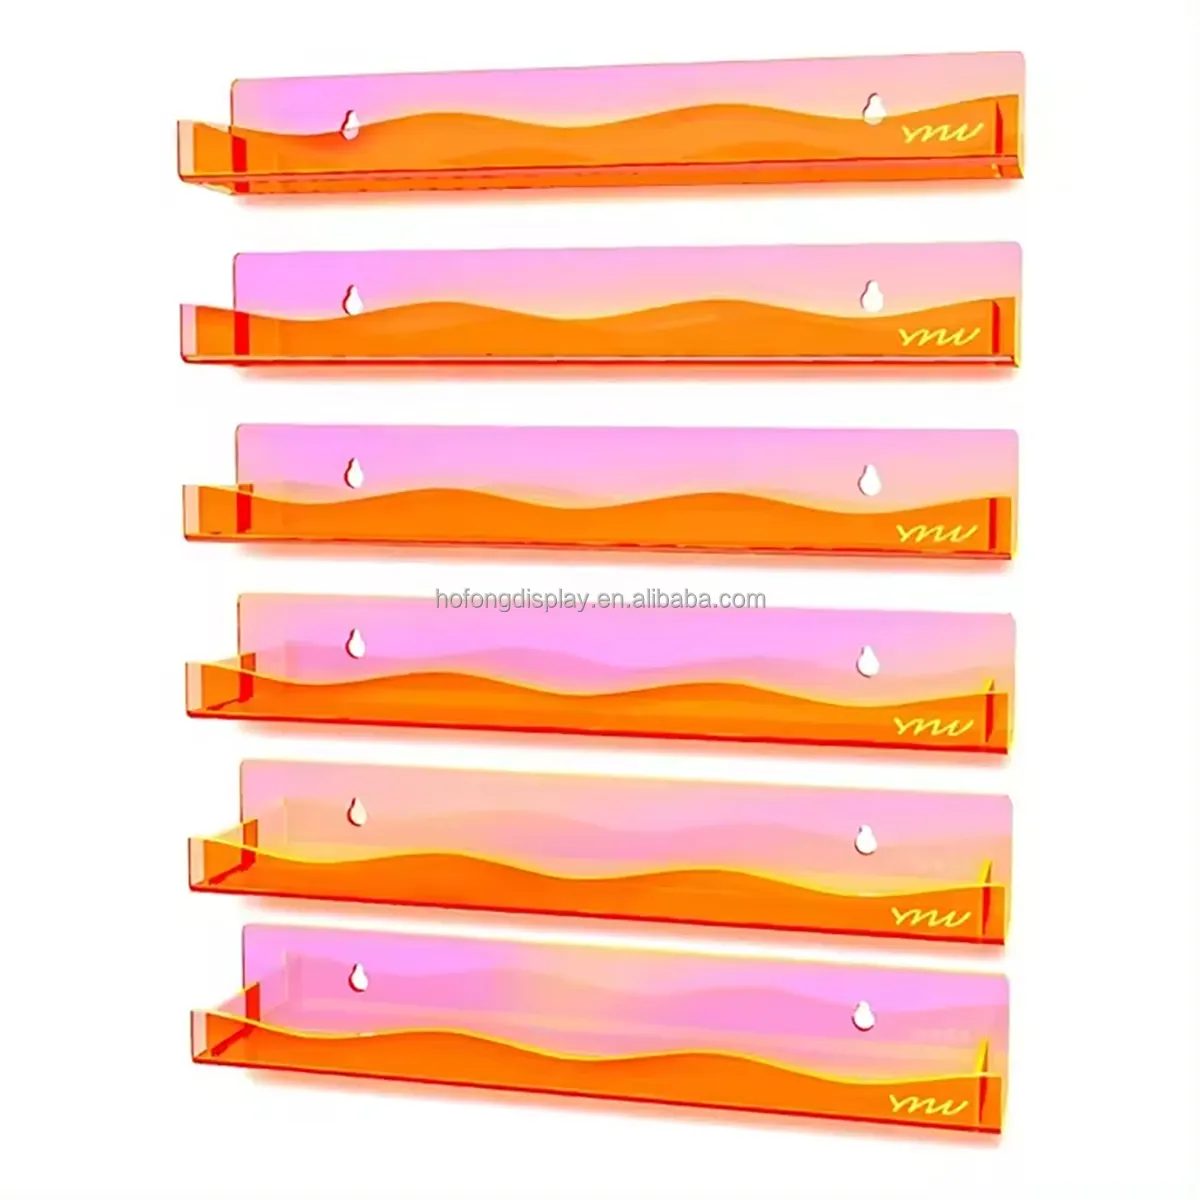 Nouveau design Organisateur de vernis à ongles en acrylique orange fluorescent Support de vernis à ongles de 15 pouces Étagère murale avec bord ondulé